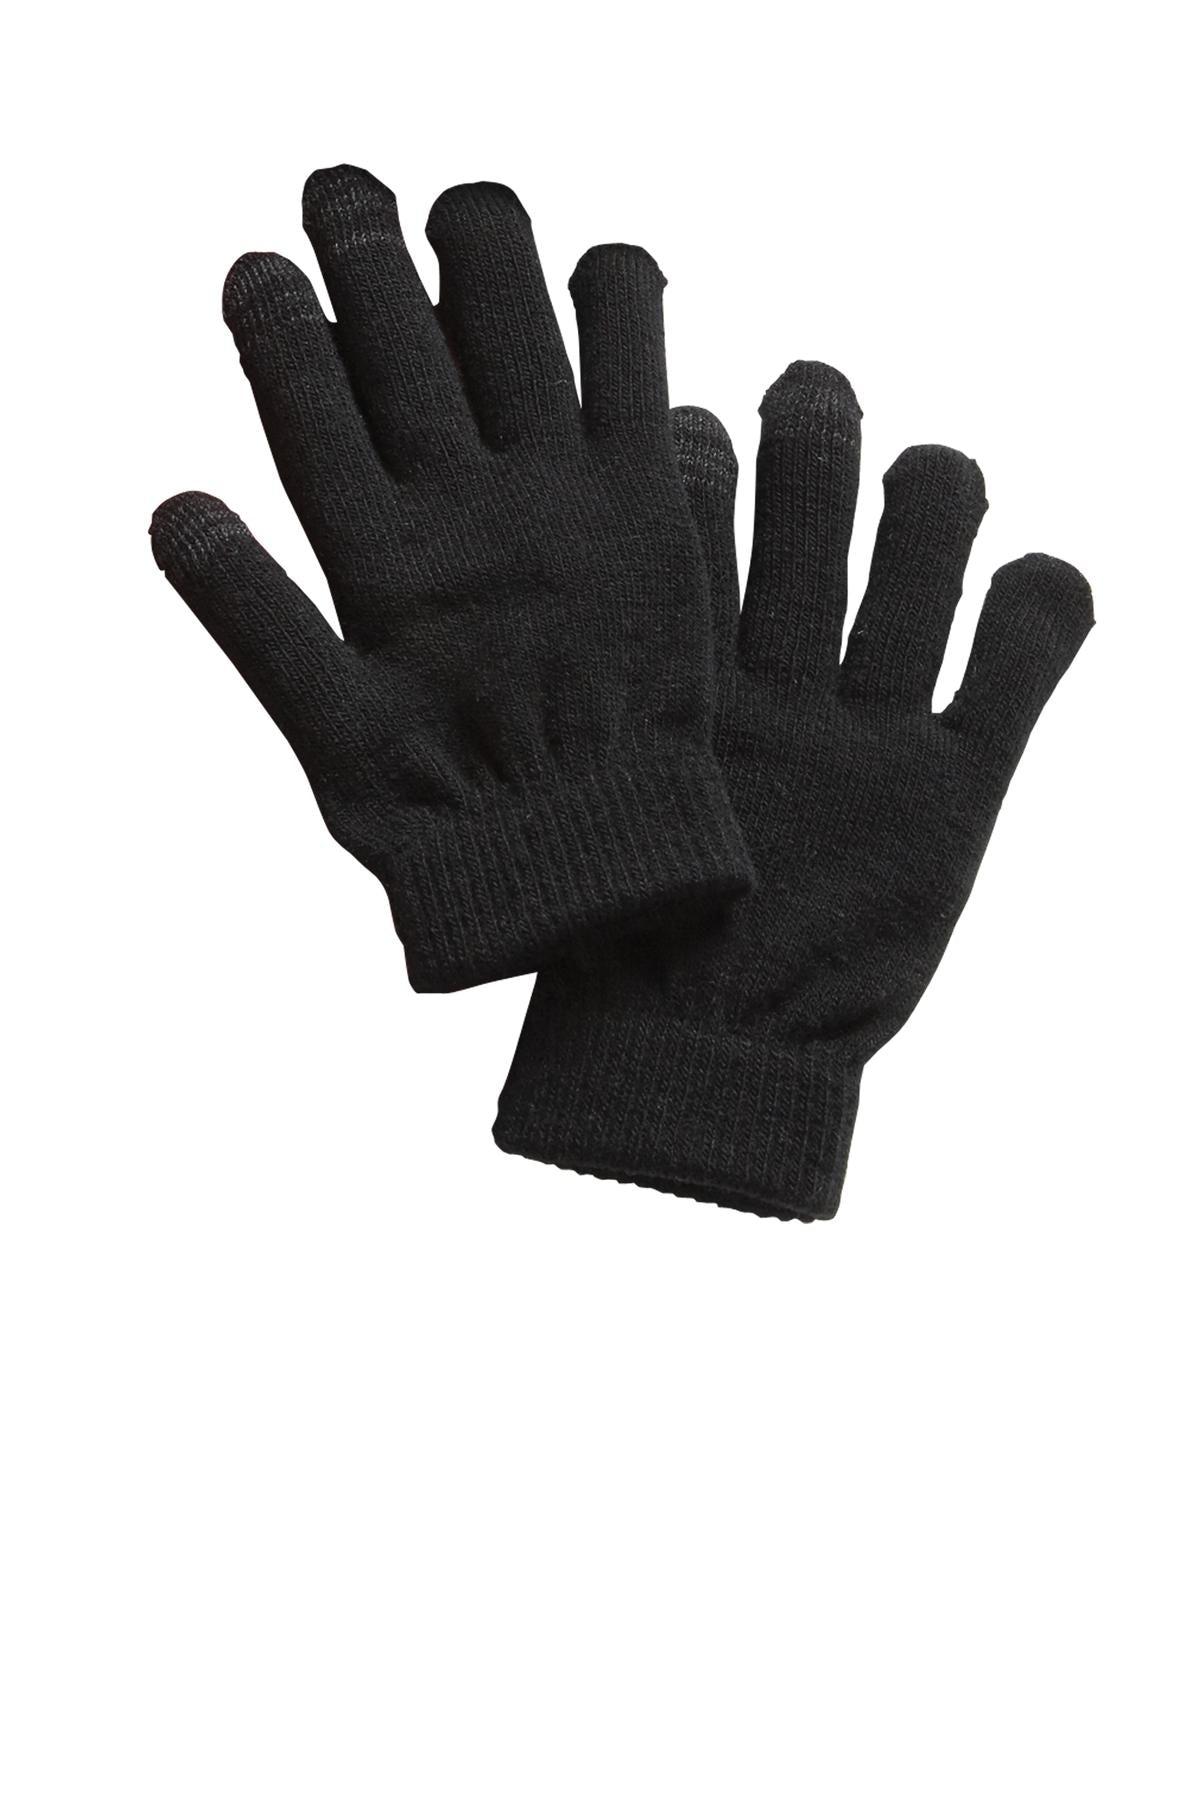 Sport-Tek Spectator Gloves. STA01